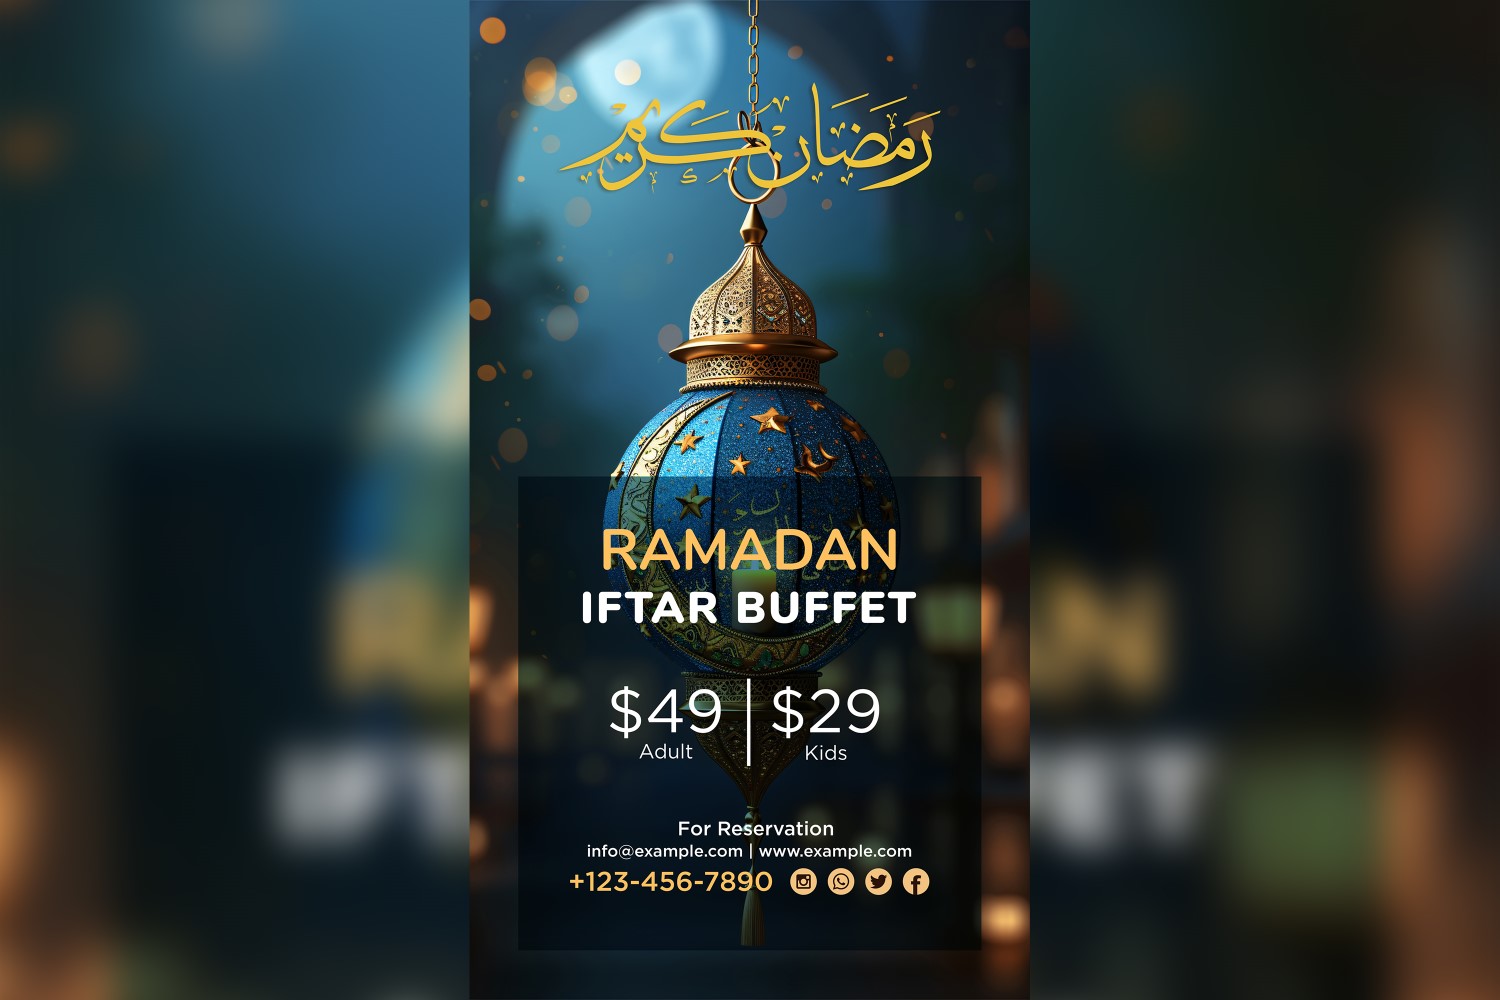 Ramadan Iftar Buffet Poster Design Template 146